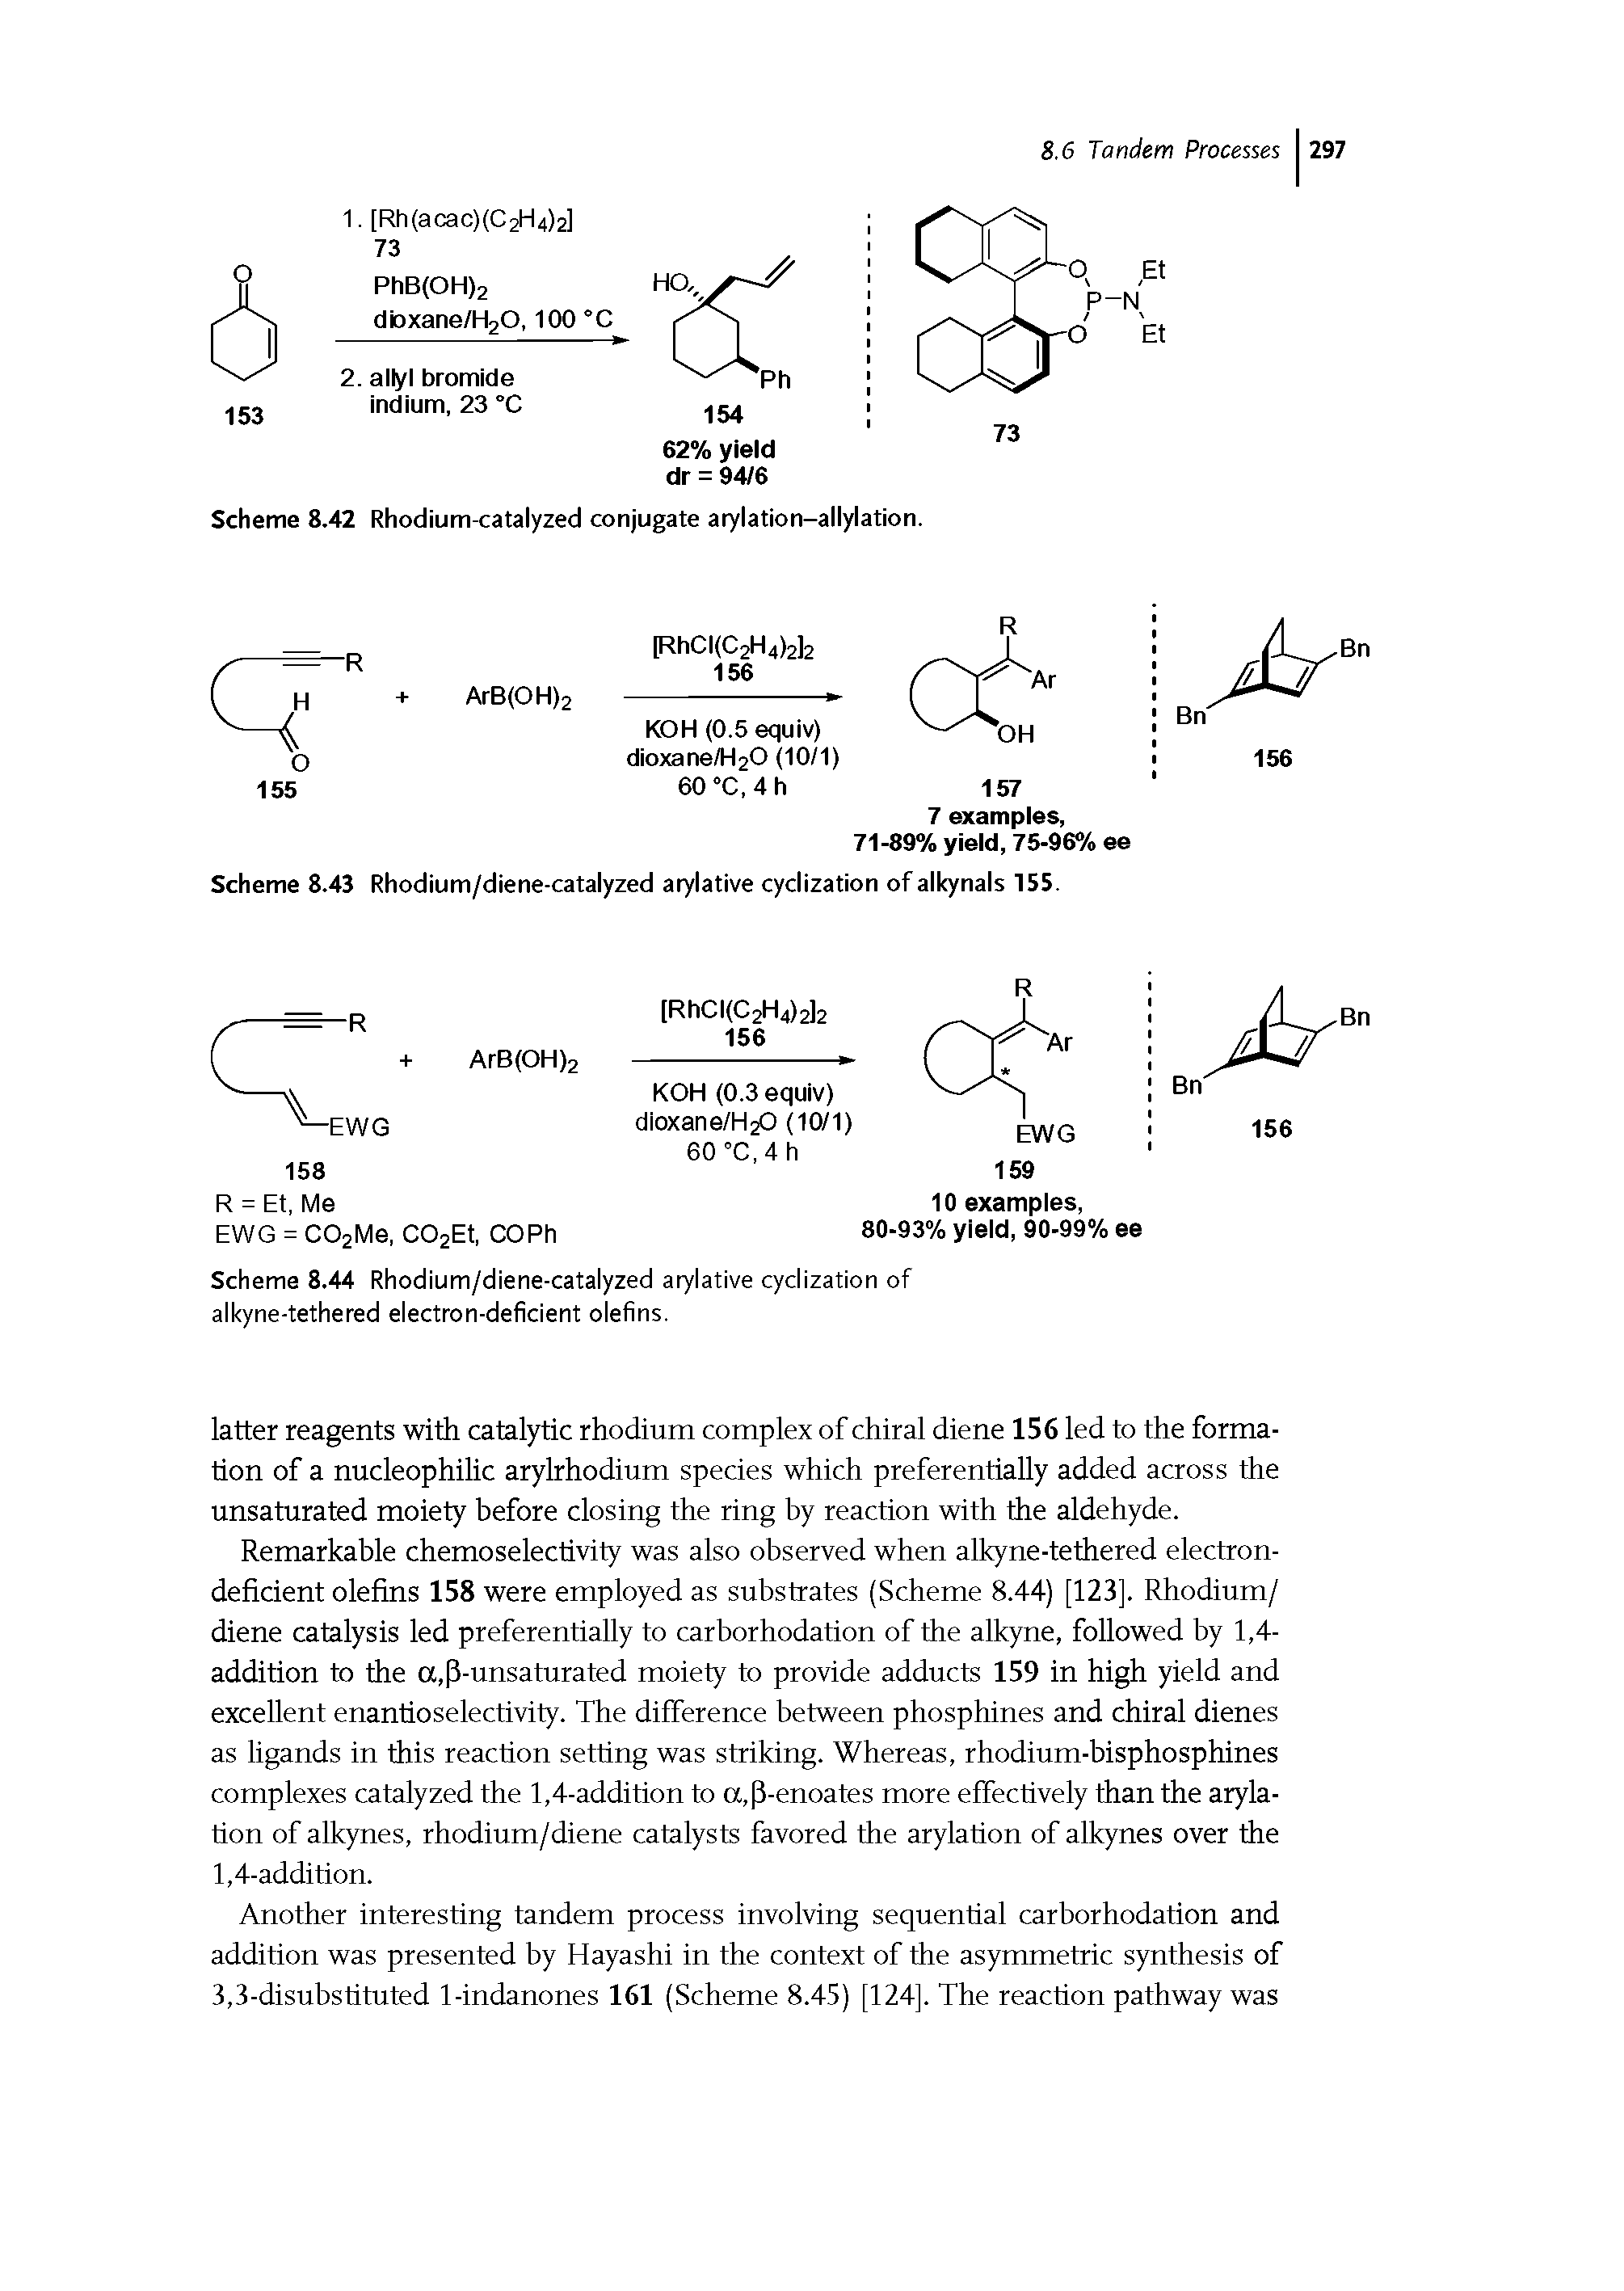 Scheme 8.43 Rhodium/diene-catalyzed arylative cyclization of alkynals 155.